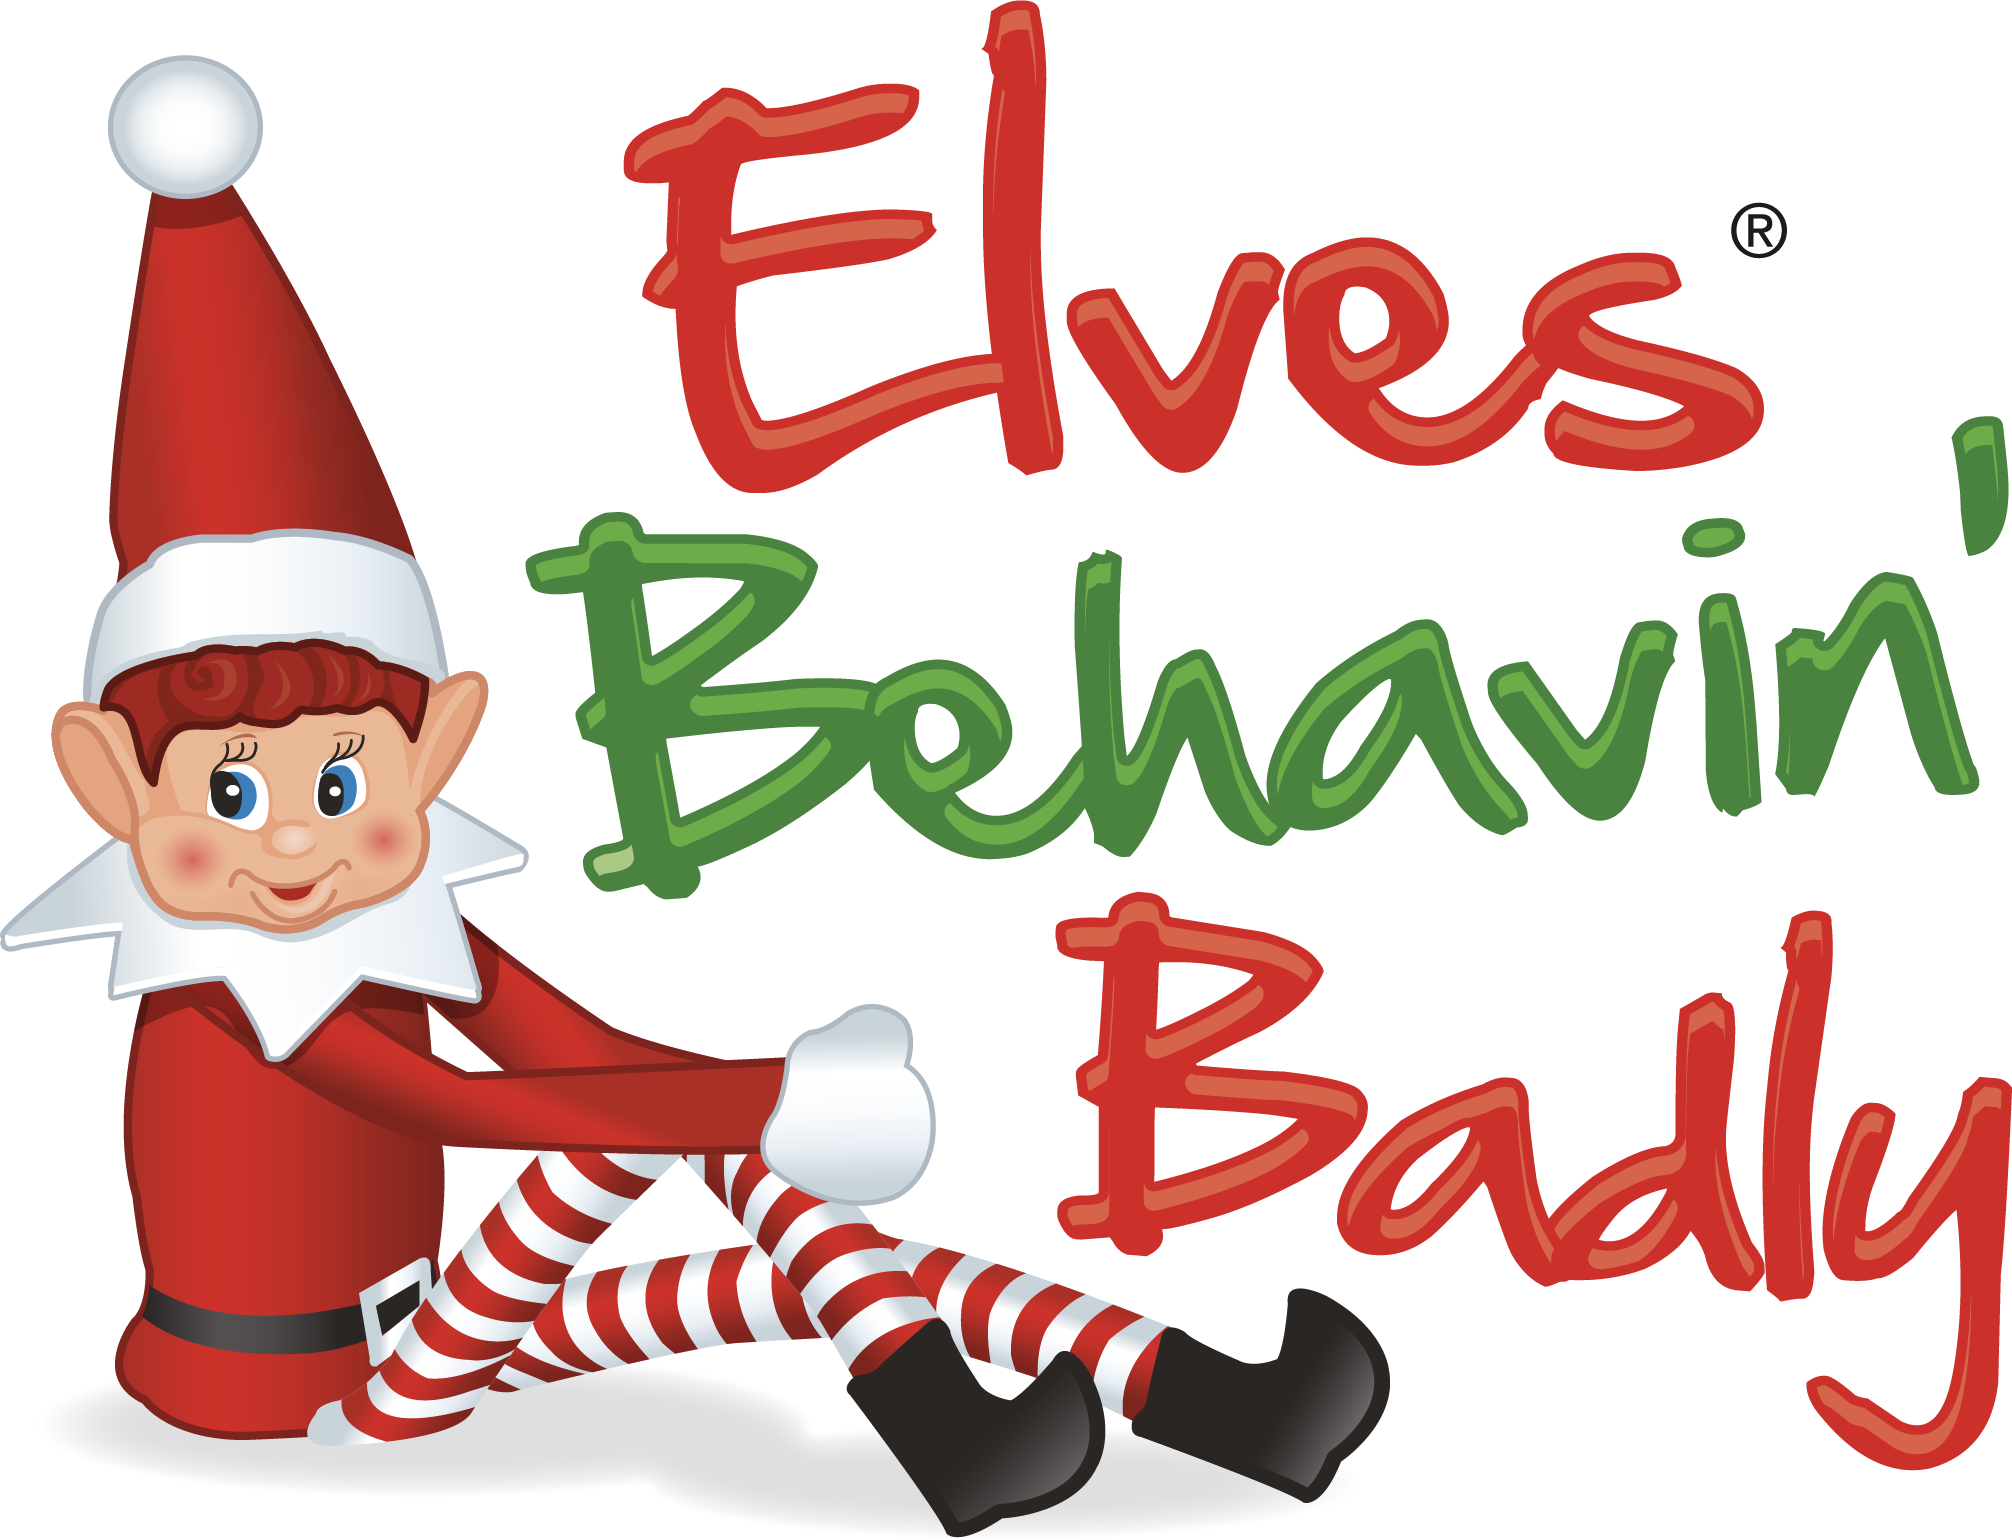 Elves Behavin Badly